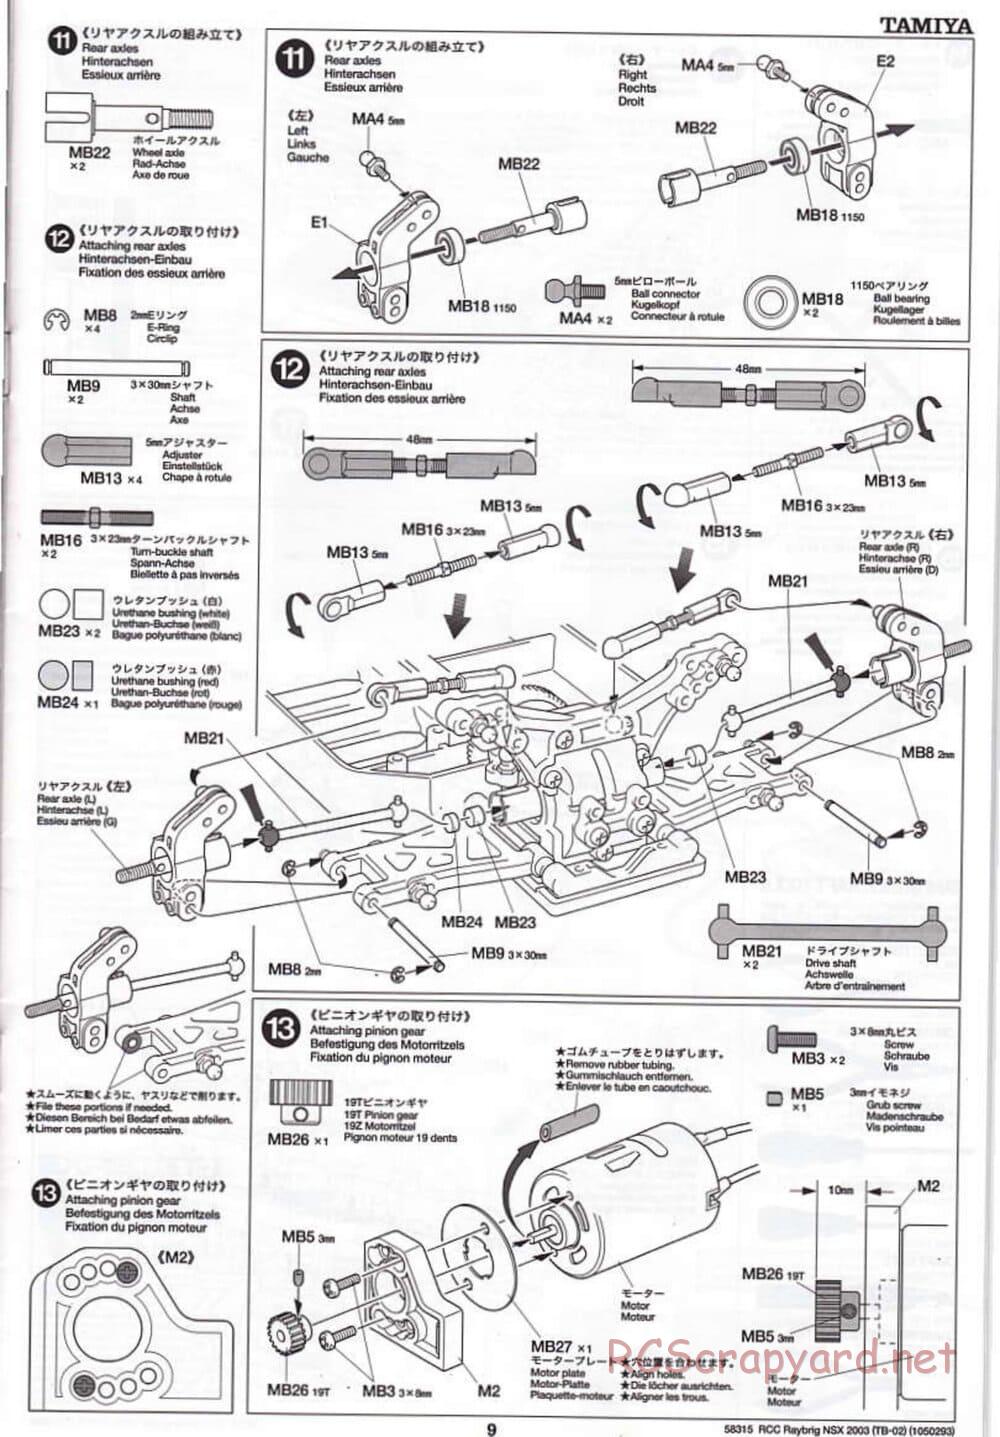 Tamiya - Raybrig NSX 2003 - TB-02 Chassis - Manual - Page 9